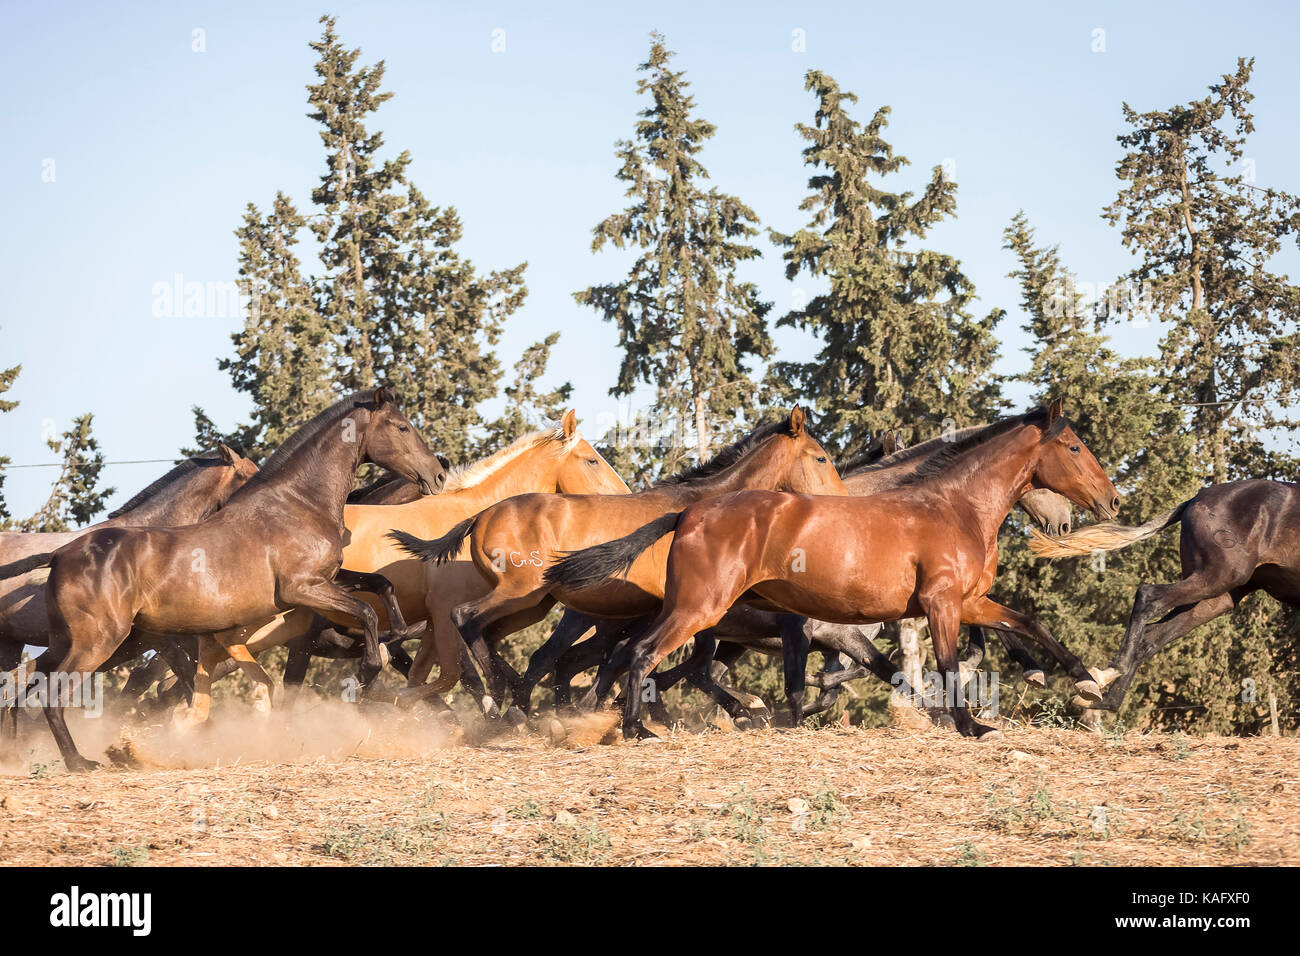 Reine Spanische Pferd, Andalusische. Herde von Jugendlichen Stuten gallopieren auf trockenem Boden. Spanien Stockfoto